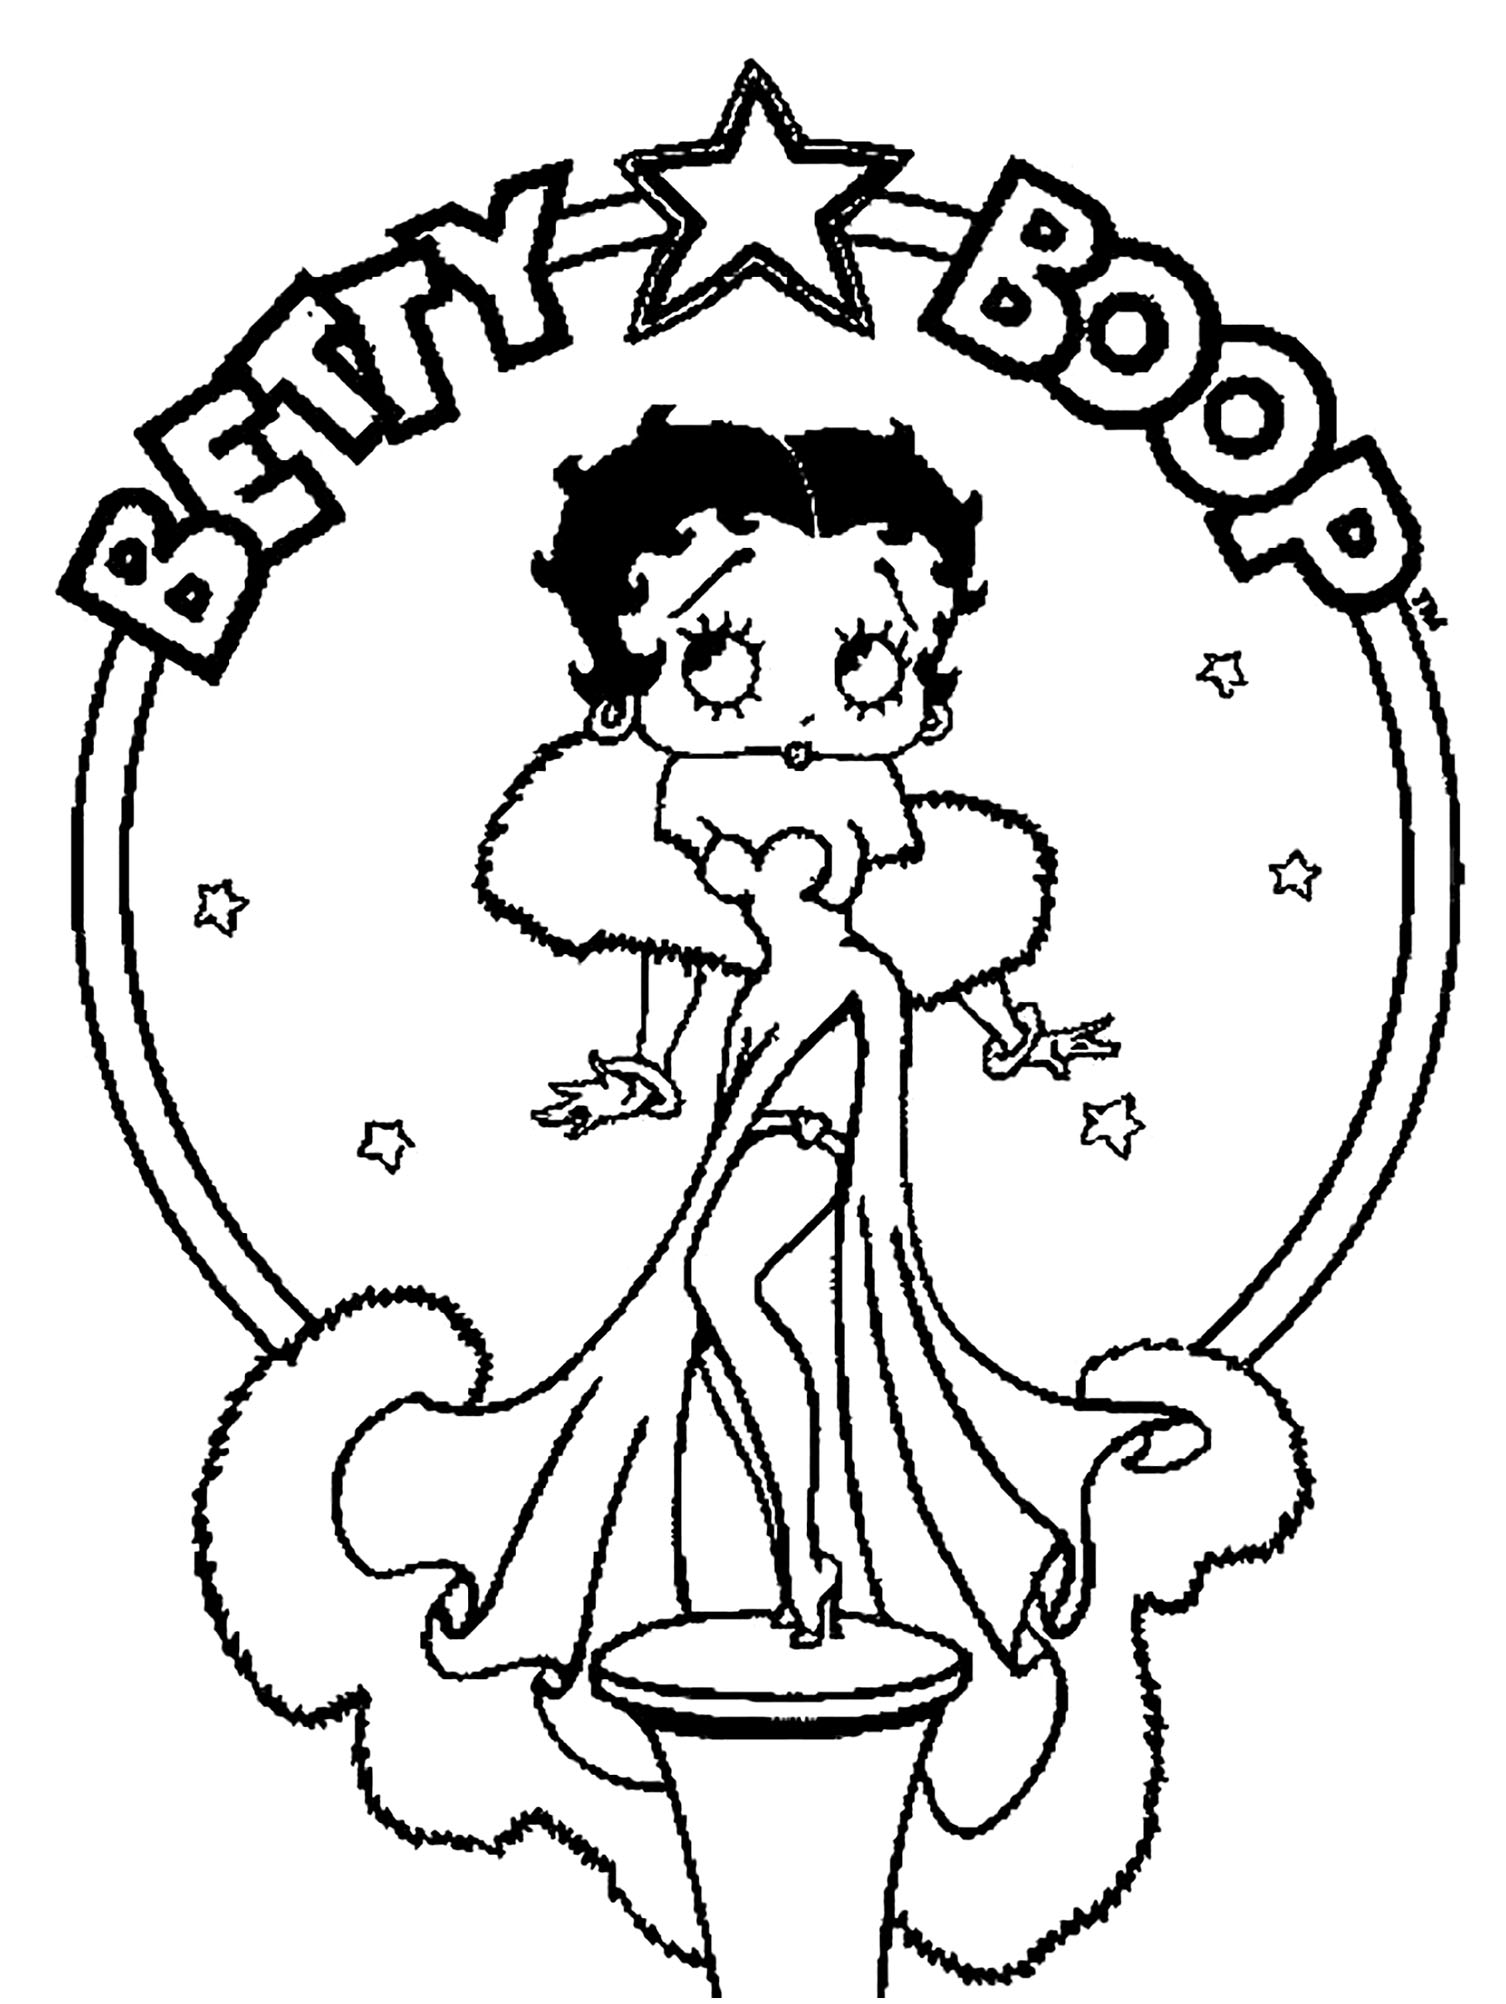 Betty Boop colorir páginas para imprimir